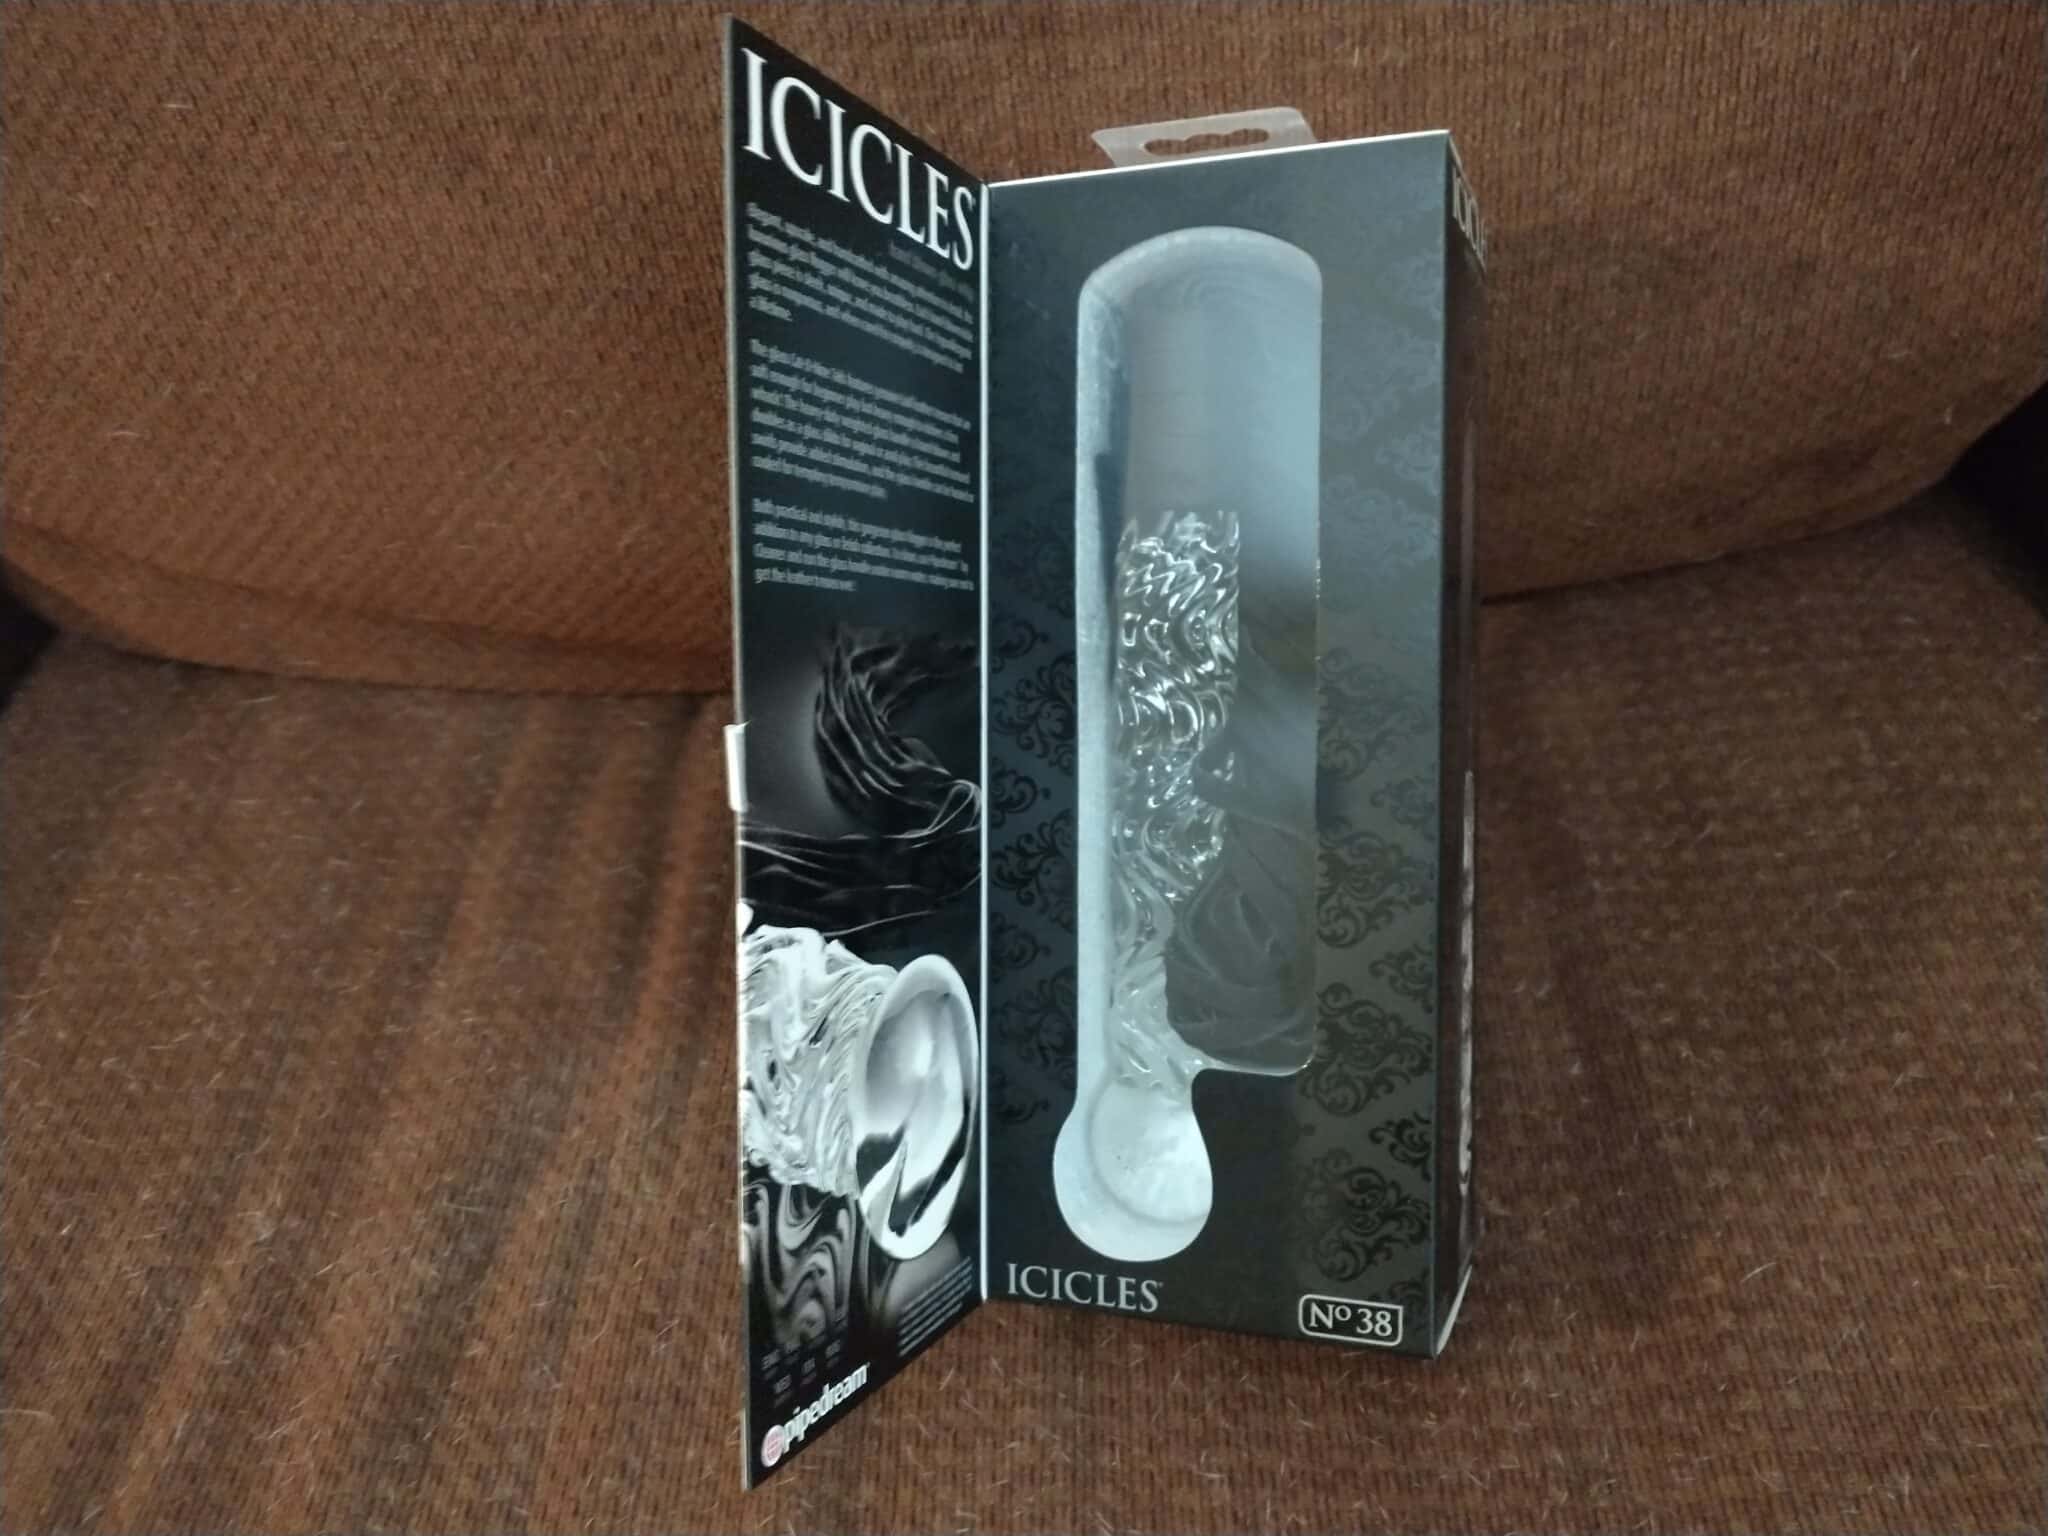 Icicles No. 38 Glass Dildo Flogger The Icicles No. 38 Glass Dildo Flogger: An Analysis of Packaging